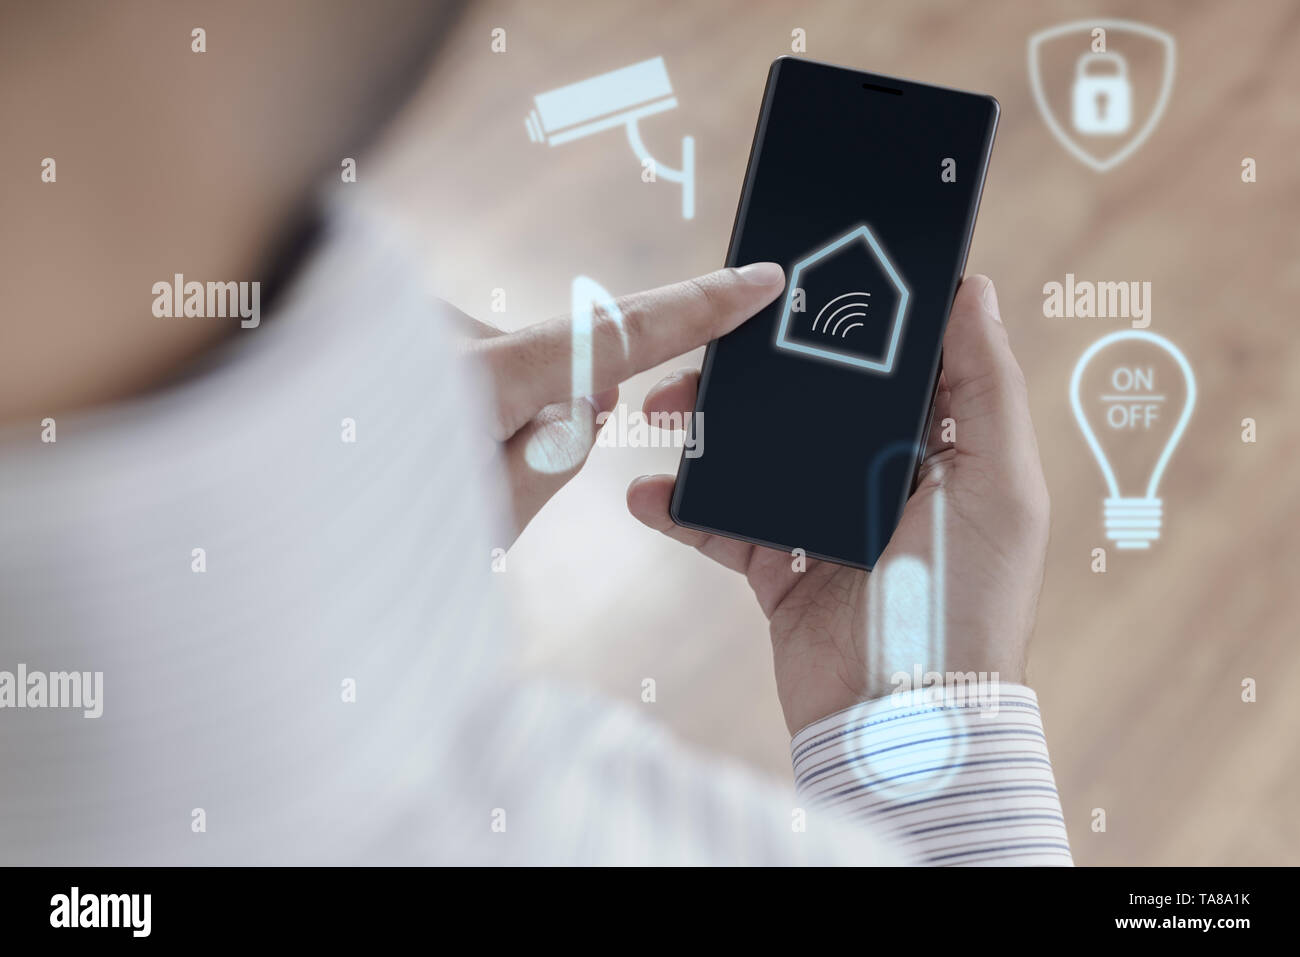 L'uomo utilizza lo smartphone per il controllo Smart home - casa intelligente concetto Foto Stock